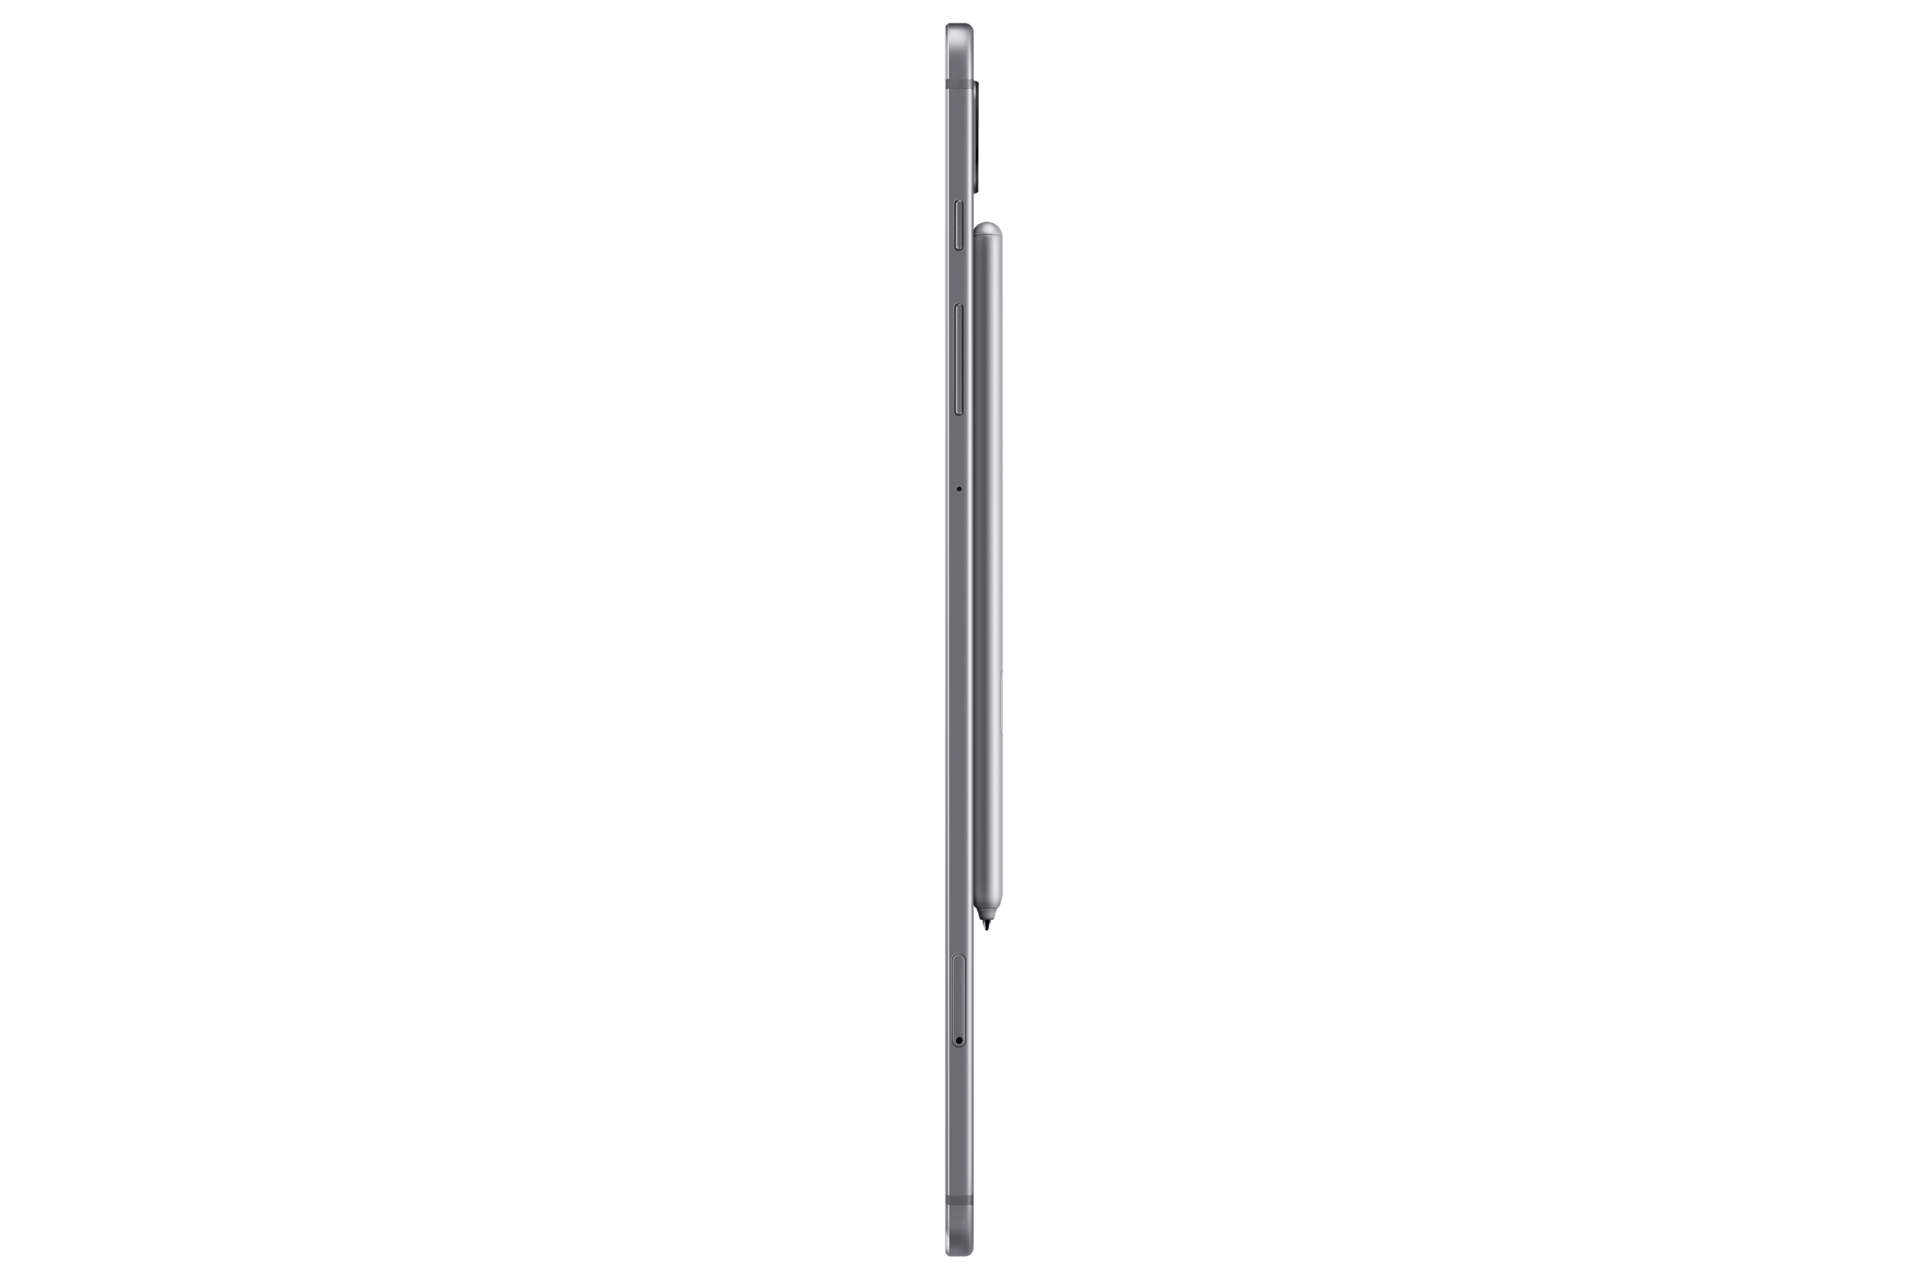 Harga Samsung Galaxy Tab S6  Review Spesifikasi Dan